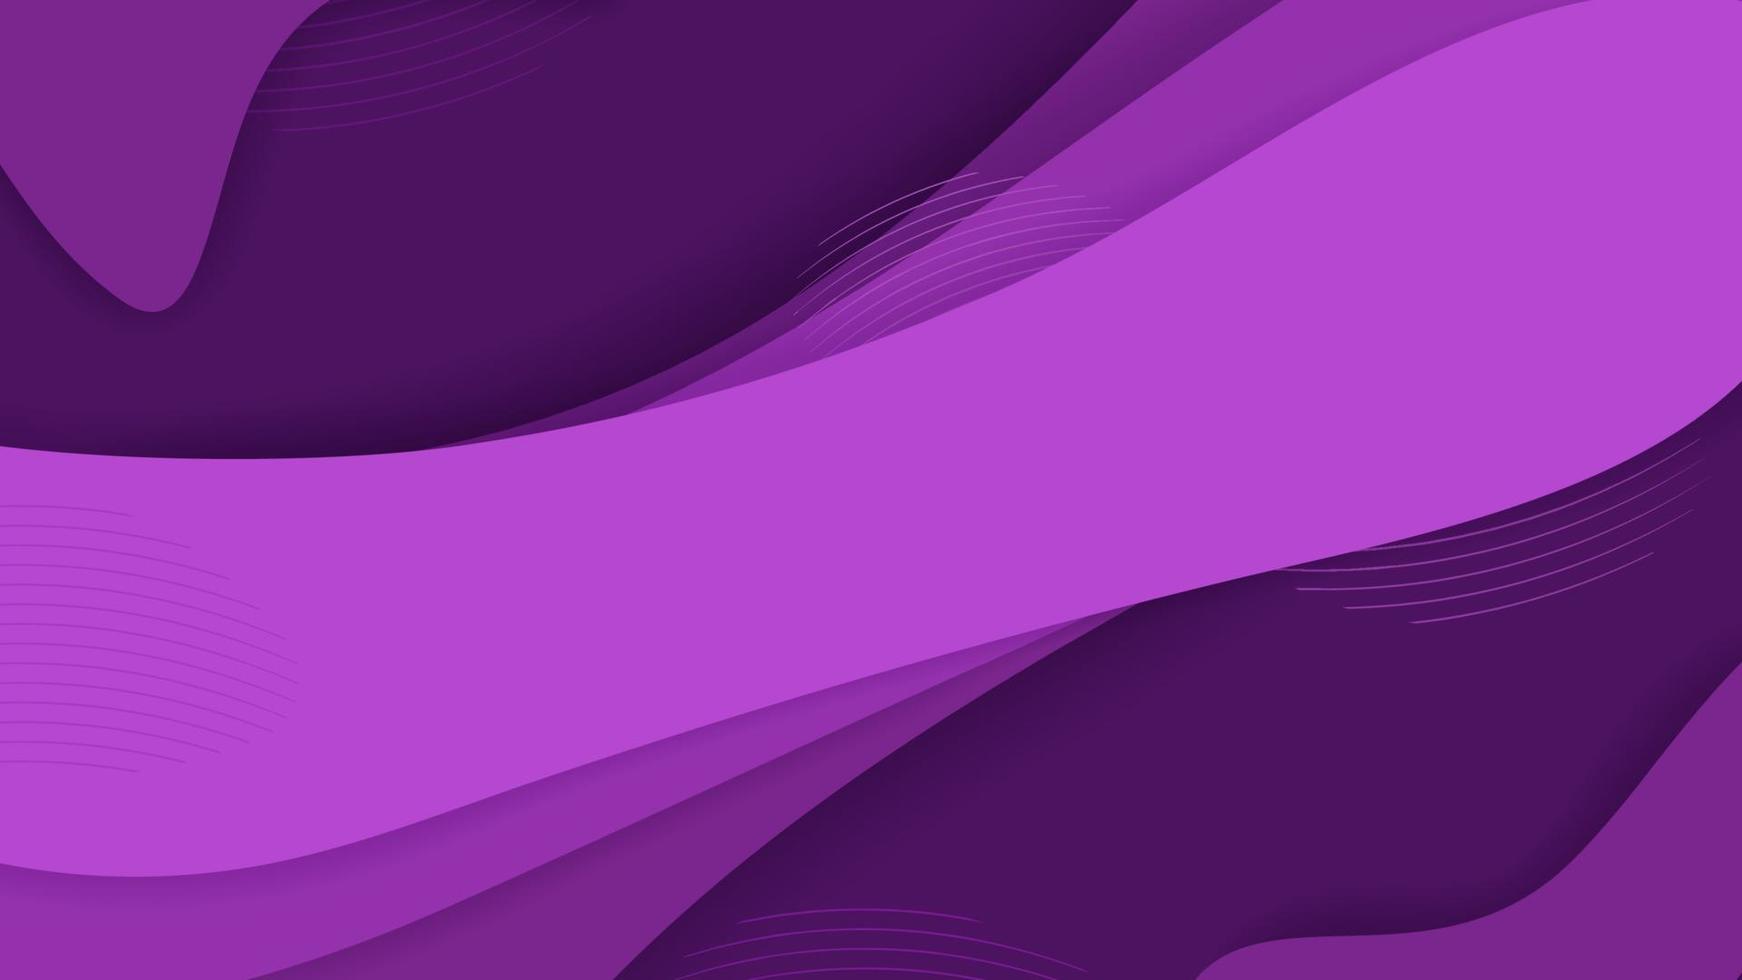 futuristische Wellenformen der purpurroten Steigung 3d mit Linie farbiger Hintergrundvektorgrafikillustration. kreatives design des abstrakten bunten flüssigen neongeometrischen hintergrunds vektor